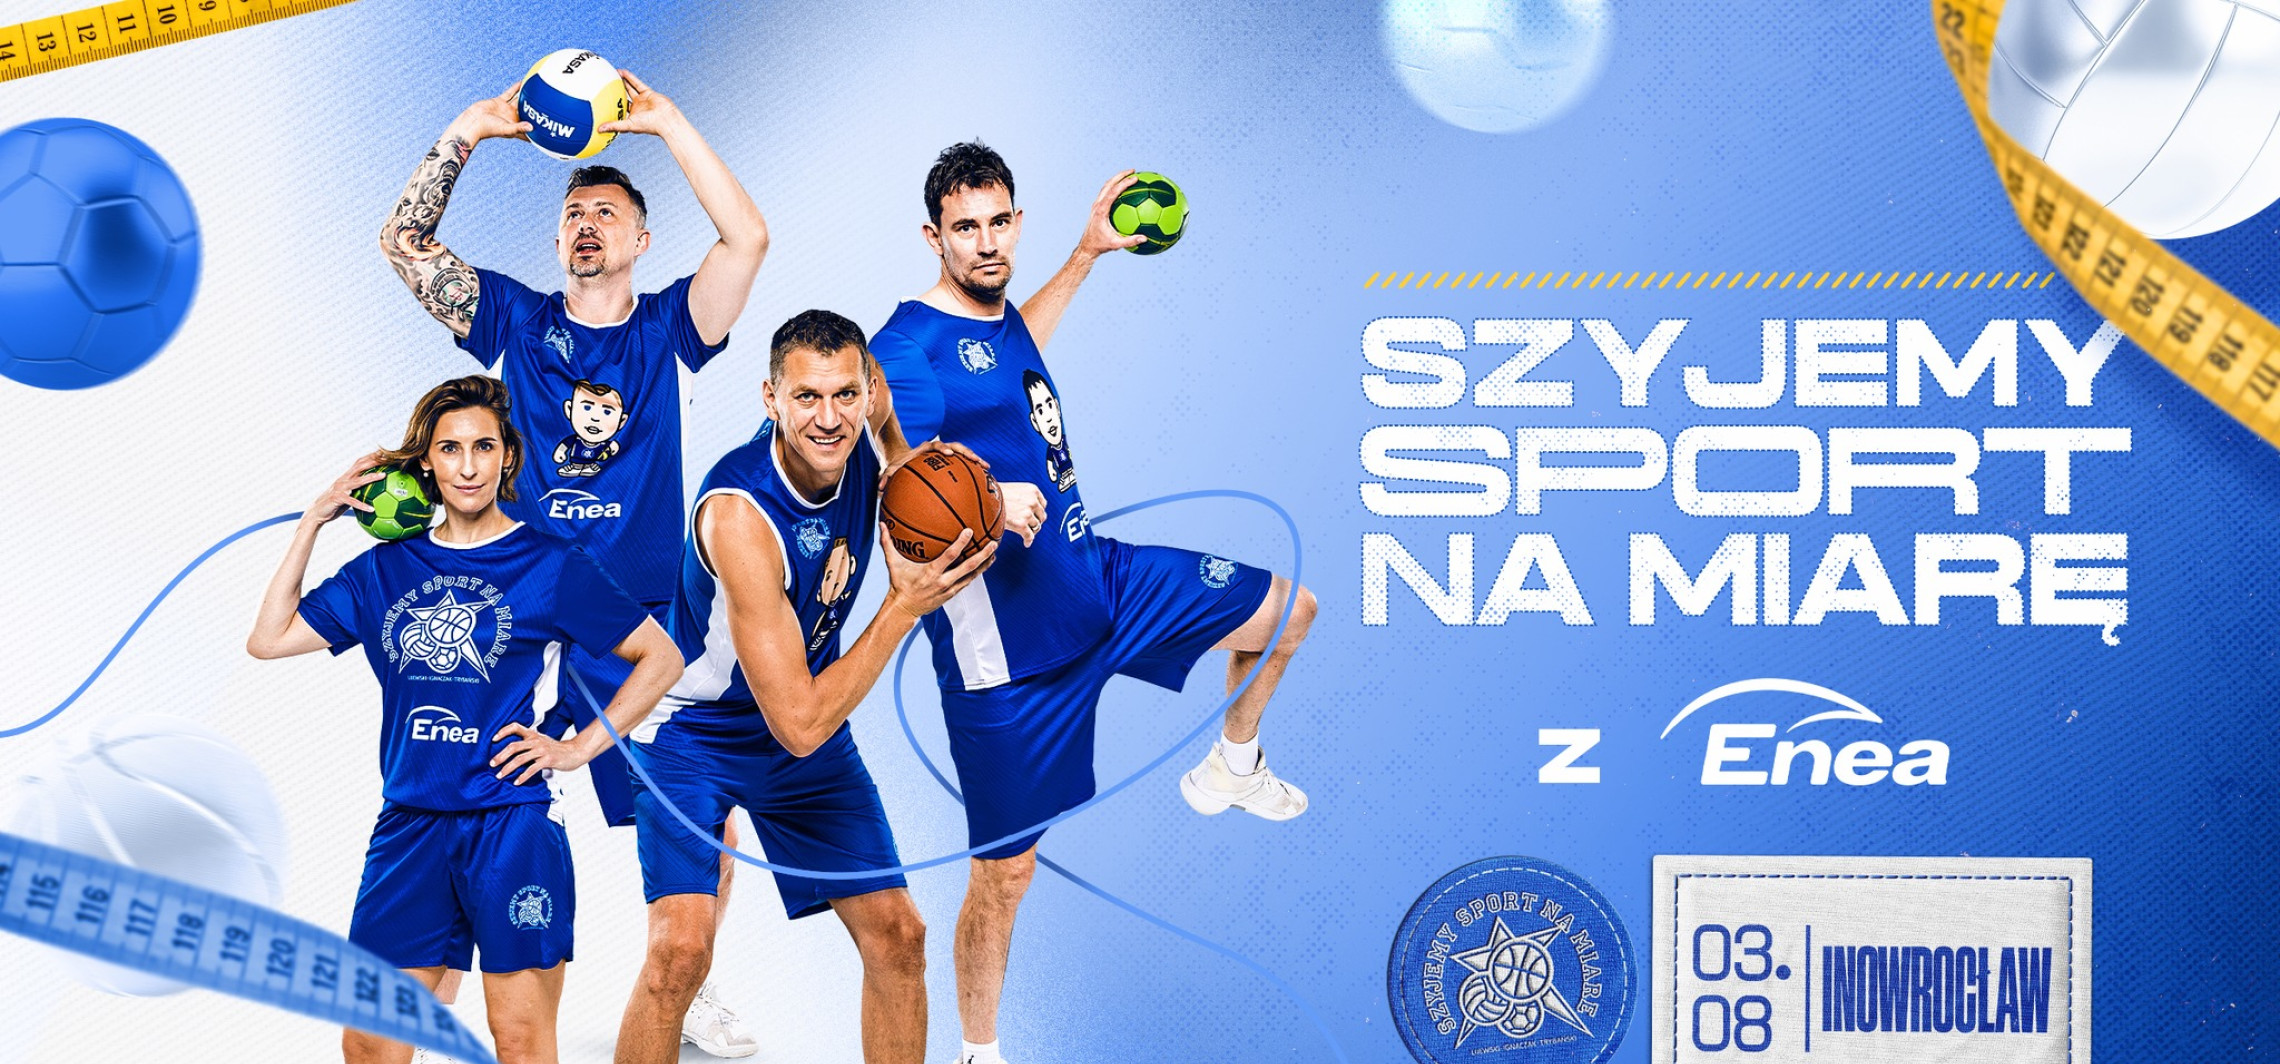 Inowrocław - Najmłodsi spotkają się z gwiazdami sportu